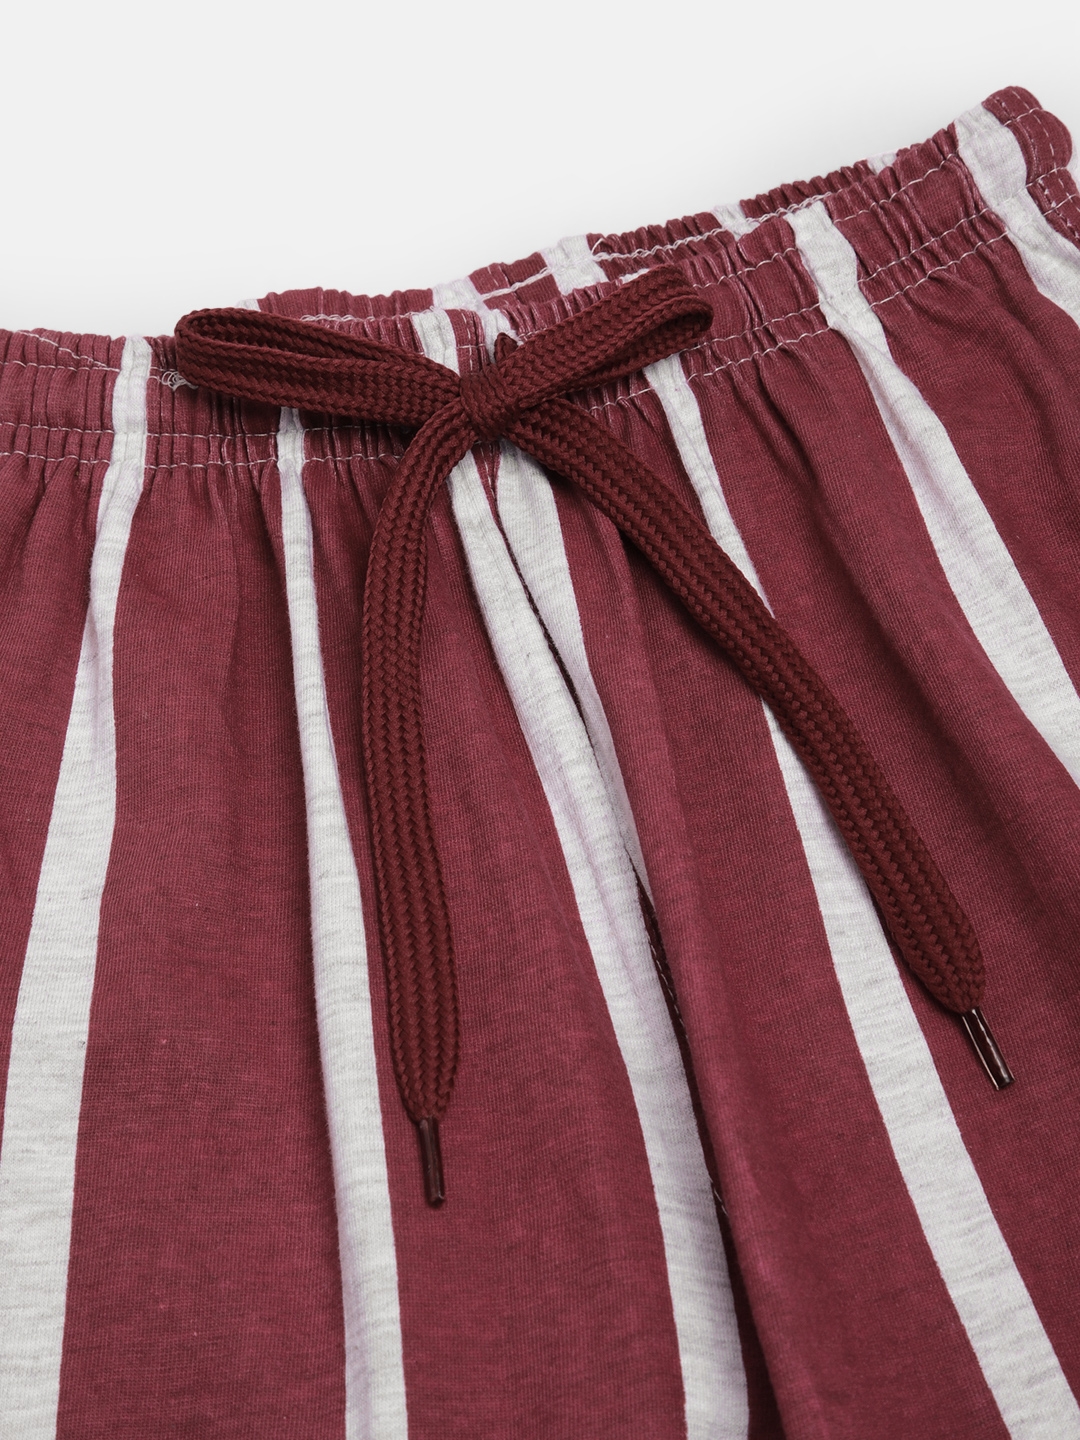 SEYBIL | Seybil teen girls cotton rich printed lounge shorts 3